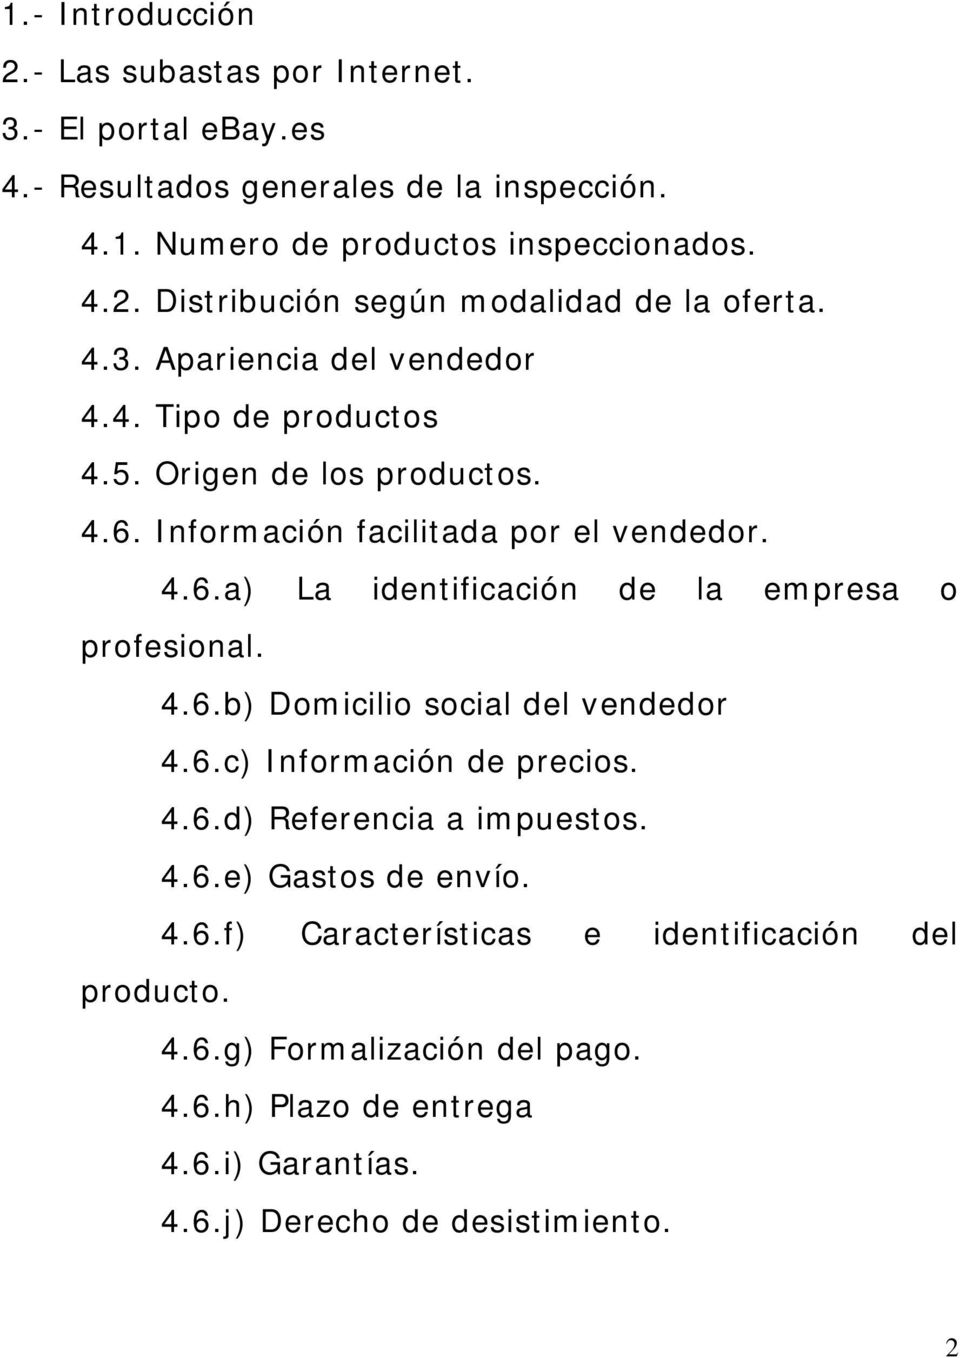 4.6.b) Domicilio social del vendedor 4.6.c) Información de precios. 4.6.d) Referencia a impuestos. 4.6.e) Gastos de envío. 4.6.f) Características e identificación del producto.